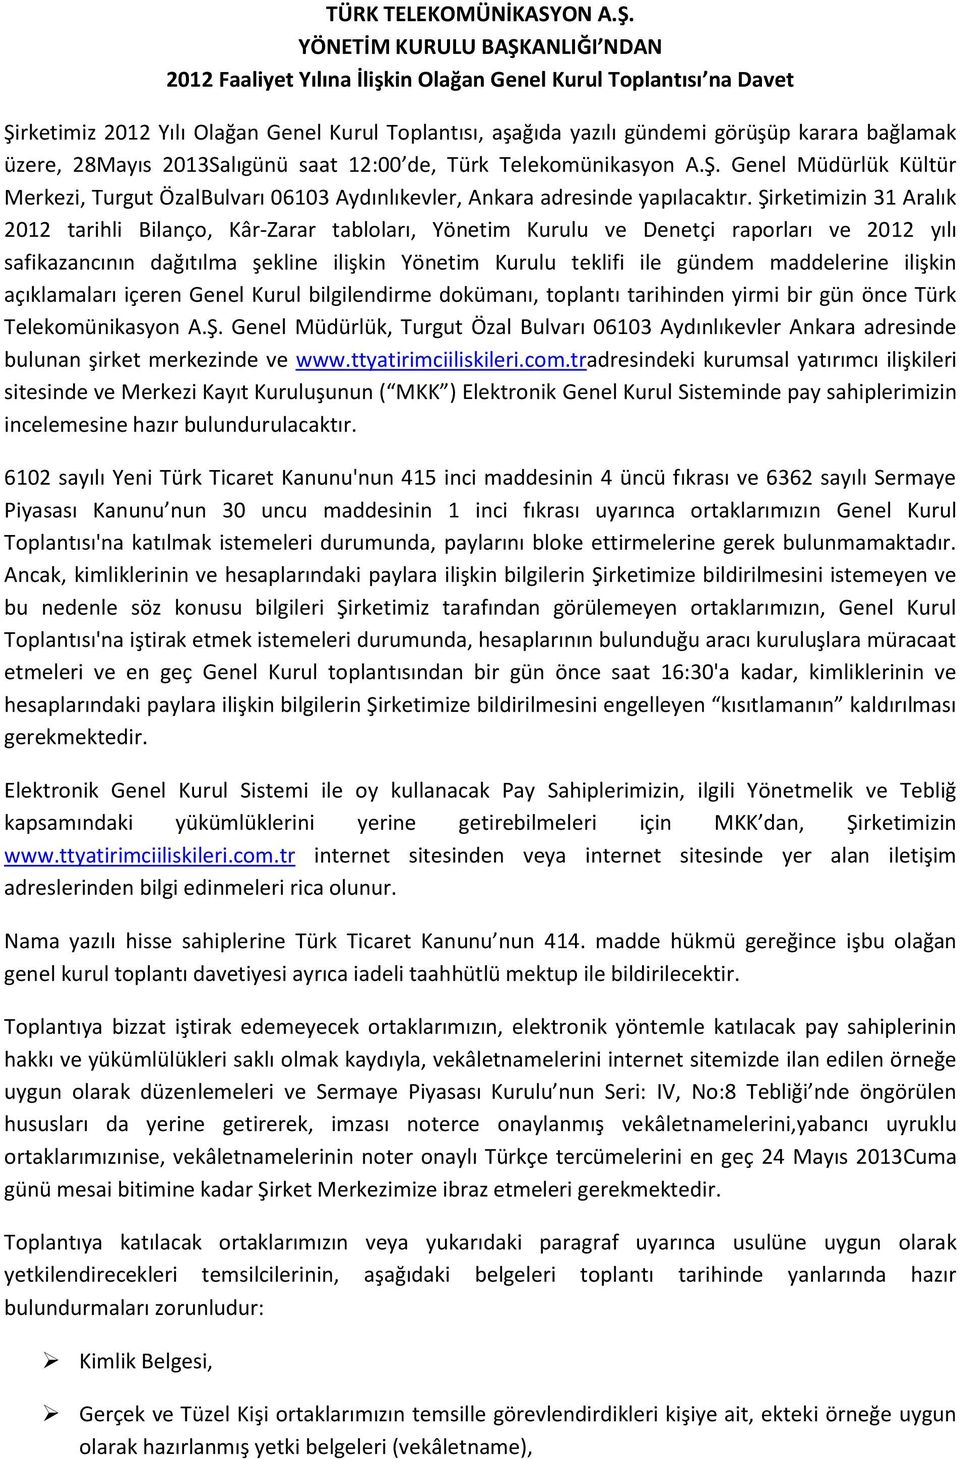 üzere, 28Mayıs 2013Salıgünü saat 12:00 de, Türk Telekomünikasyon A.Ş. Genel Müdürlük Kültür Merkezi, Turgut ÖzalBulvarı 06103 Aydınlıkevler, Ankara adresinde yapılacaktır.